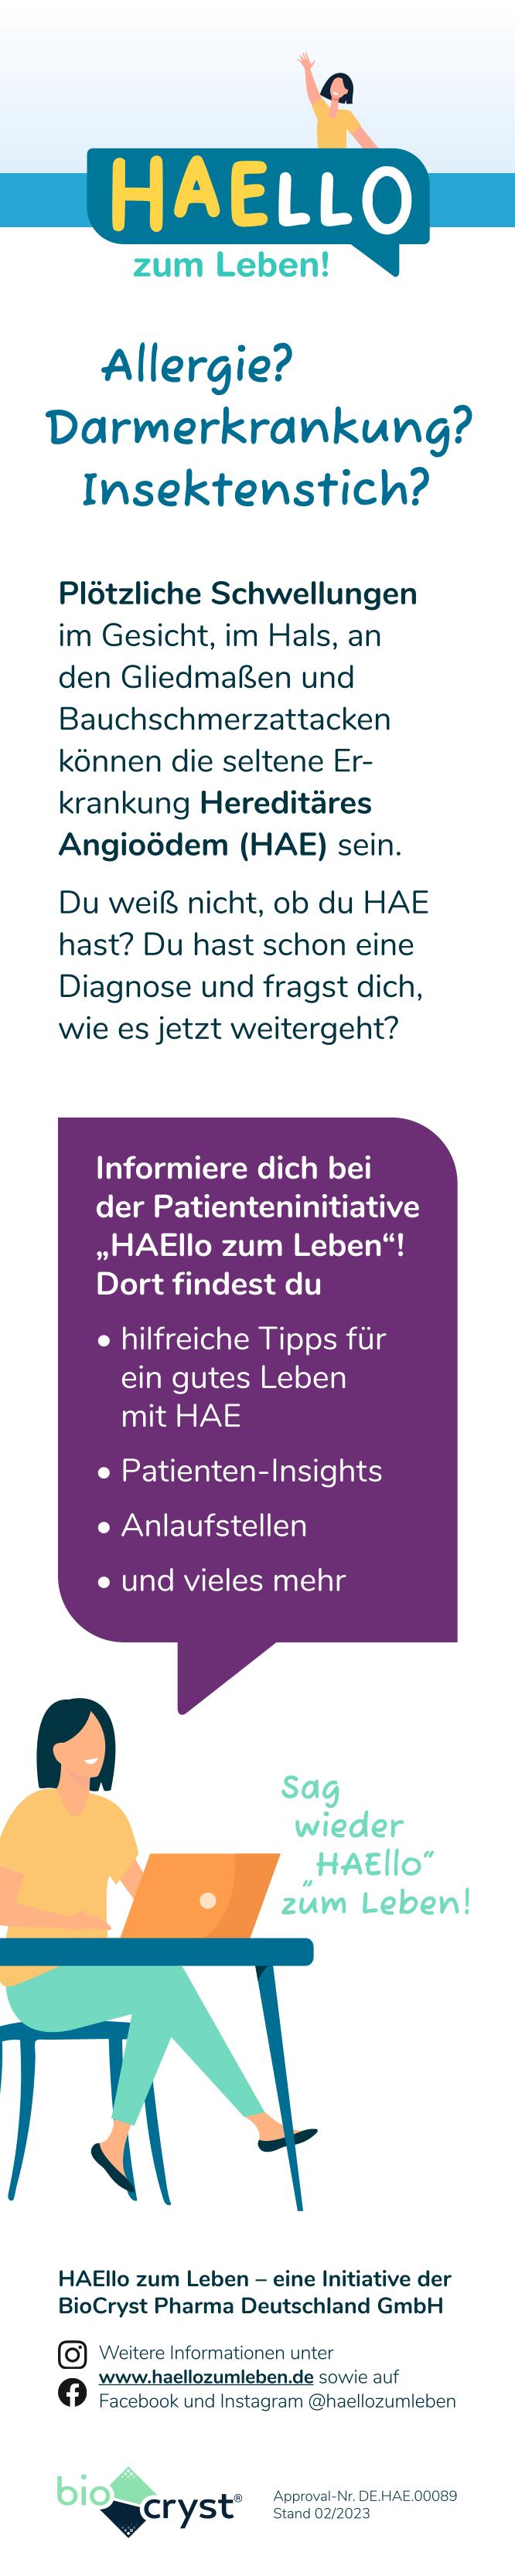 Anzeige BioCryst Pharma Deutschland GmbH für HAEllo Initiative